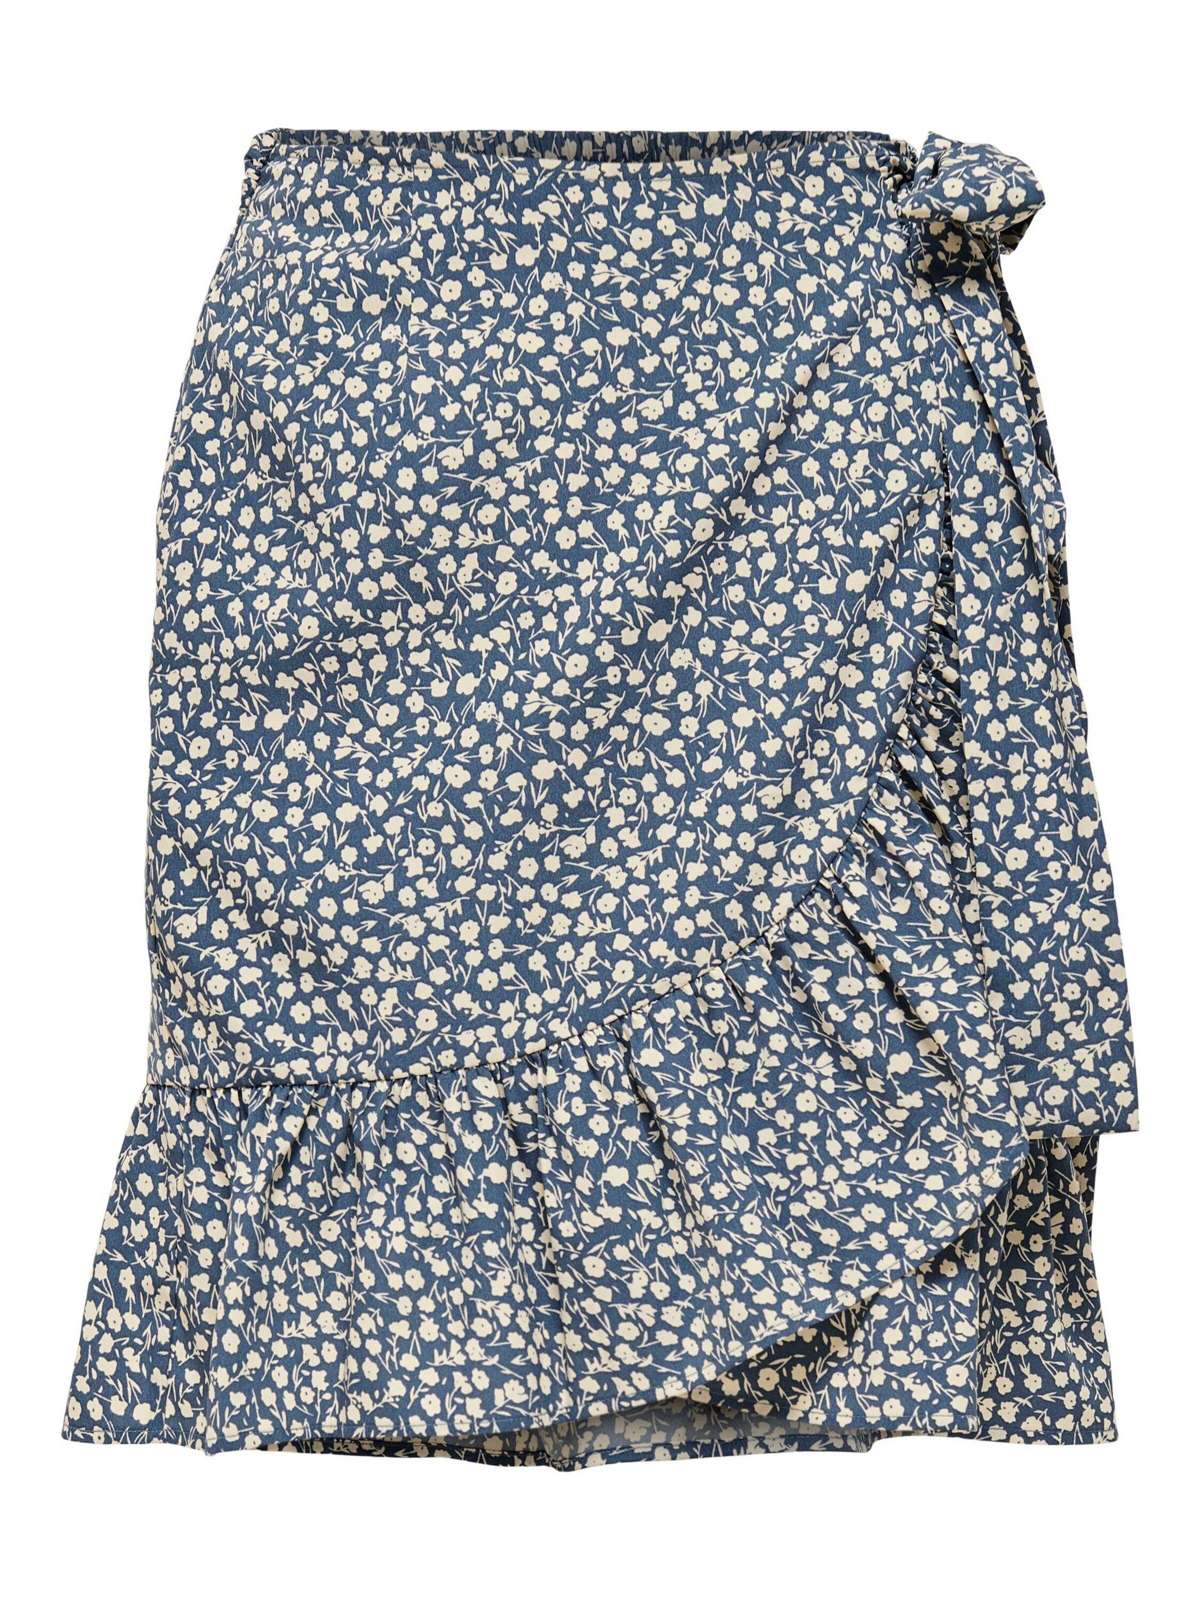 Летняя юбка короткая юбка с запахом плиссированная юбка ONLOLIVIA 4848 синего цвета